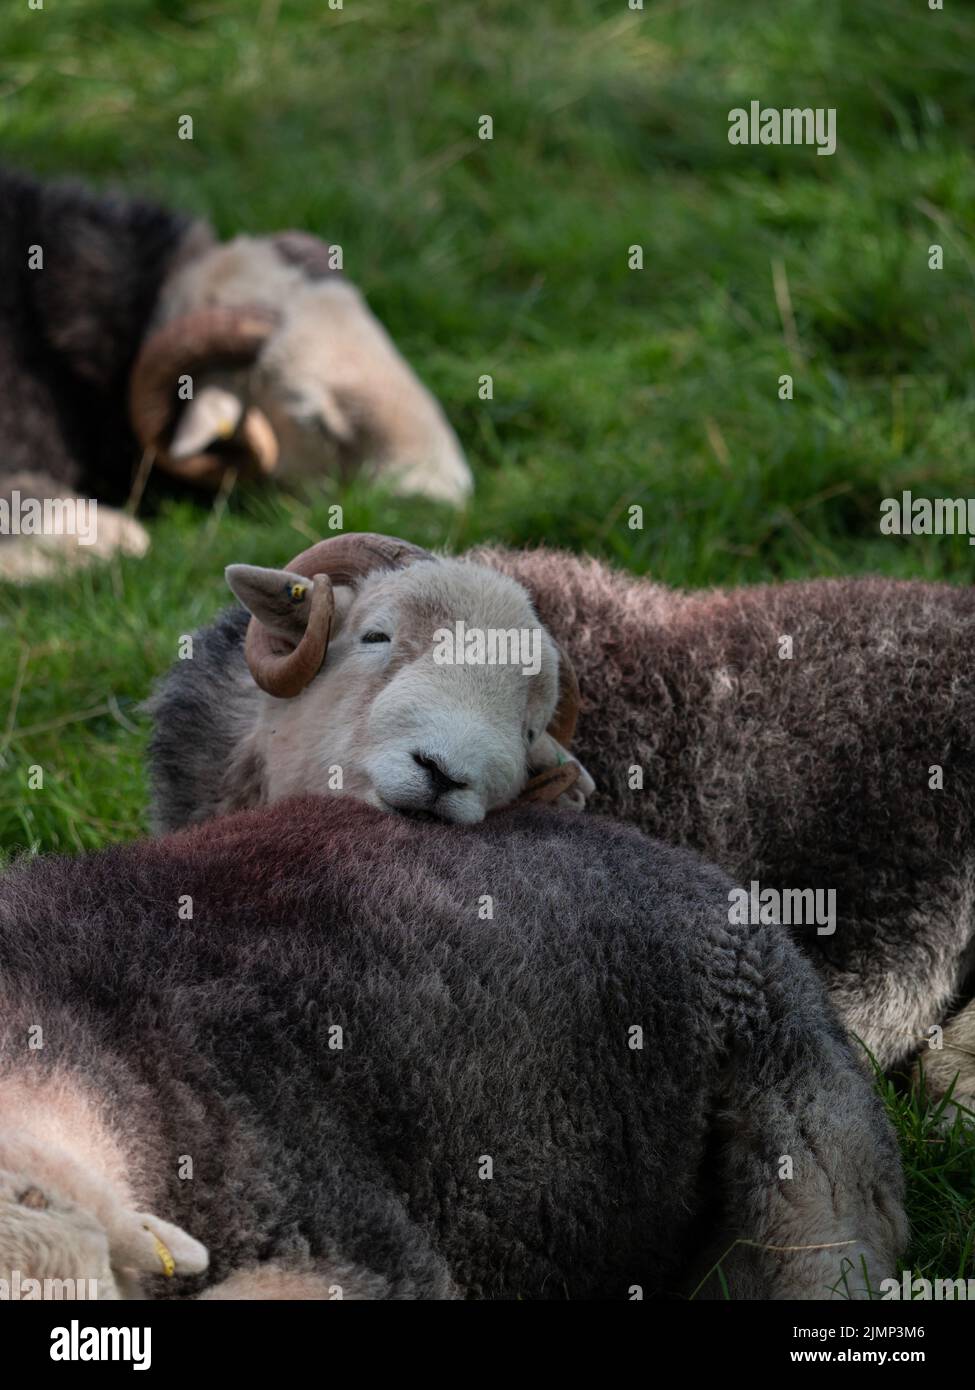 Cuddly grey sheep snuggling, Lake District, UK Stock Photo